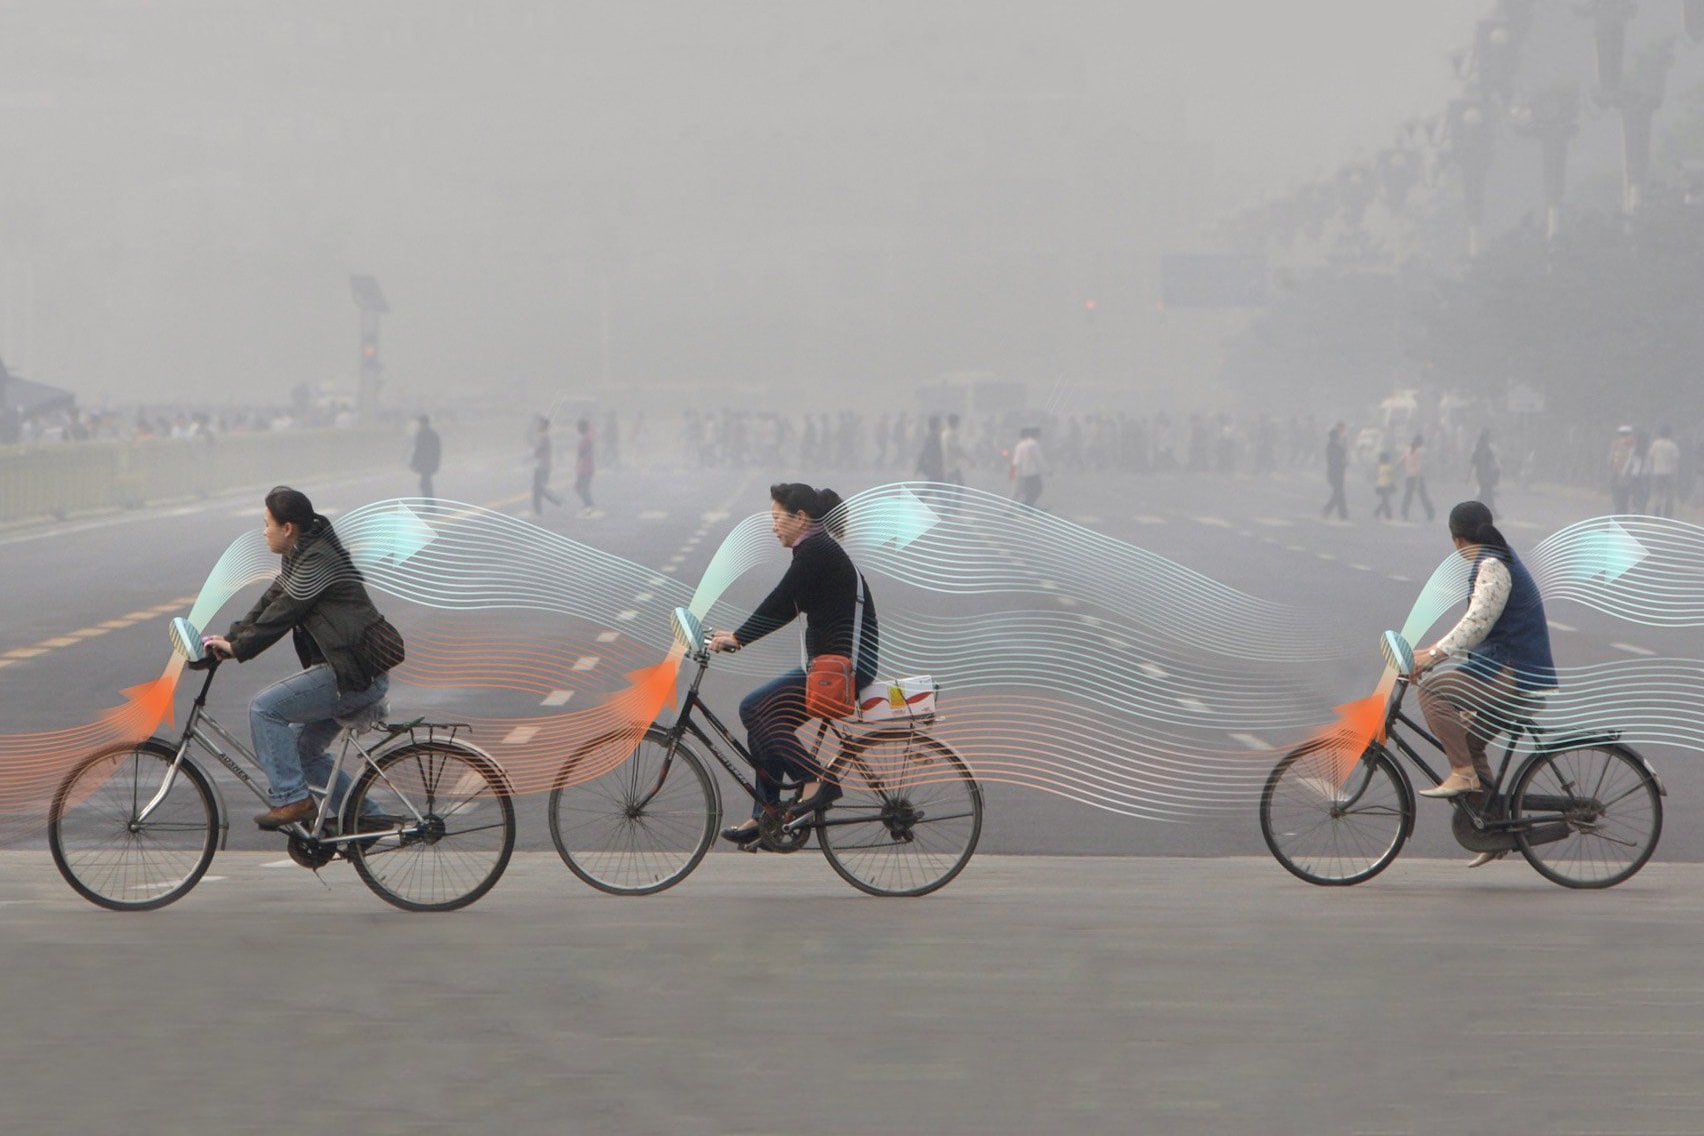 設計師提出「霧霾淨化單車」概念幫助中國解決空氣問題